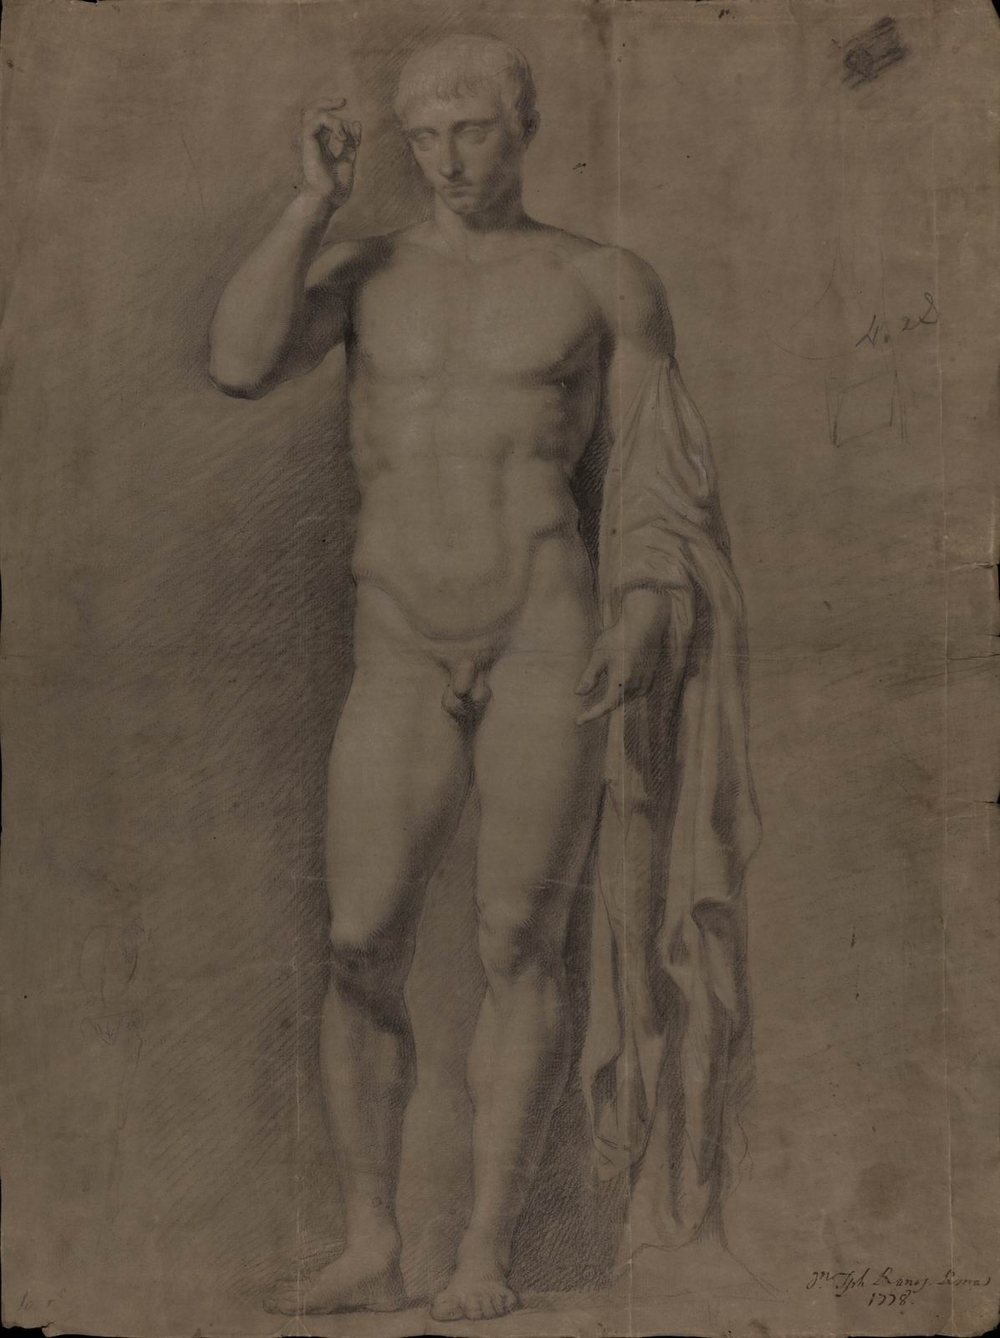 Francisco Javier Ramos y Albertos: Estudio de la escultura de Claudio Marcelo anteriormente llamado Germánico (sig. P-1230)